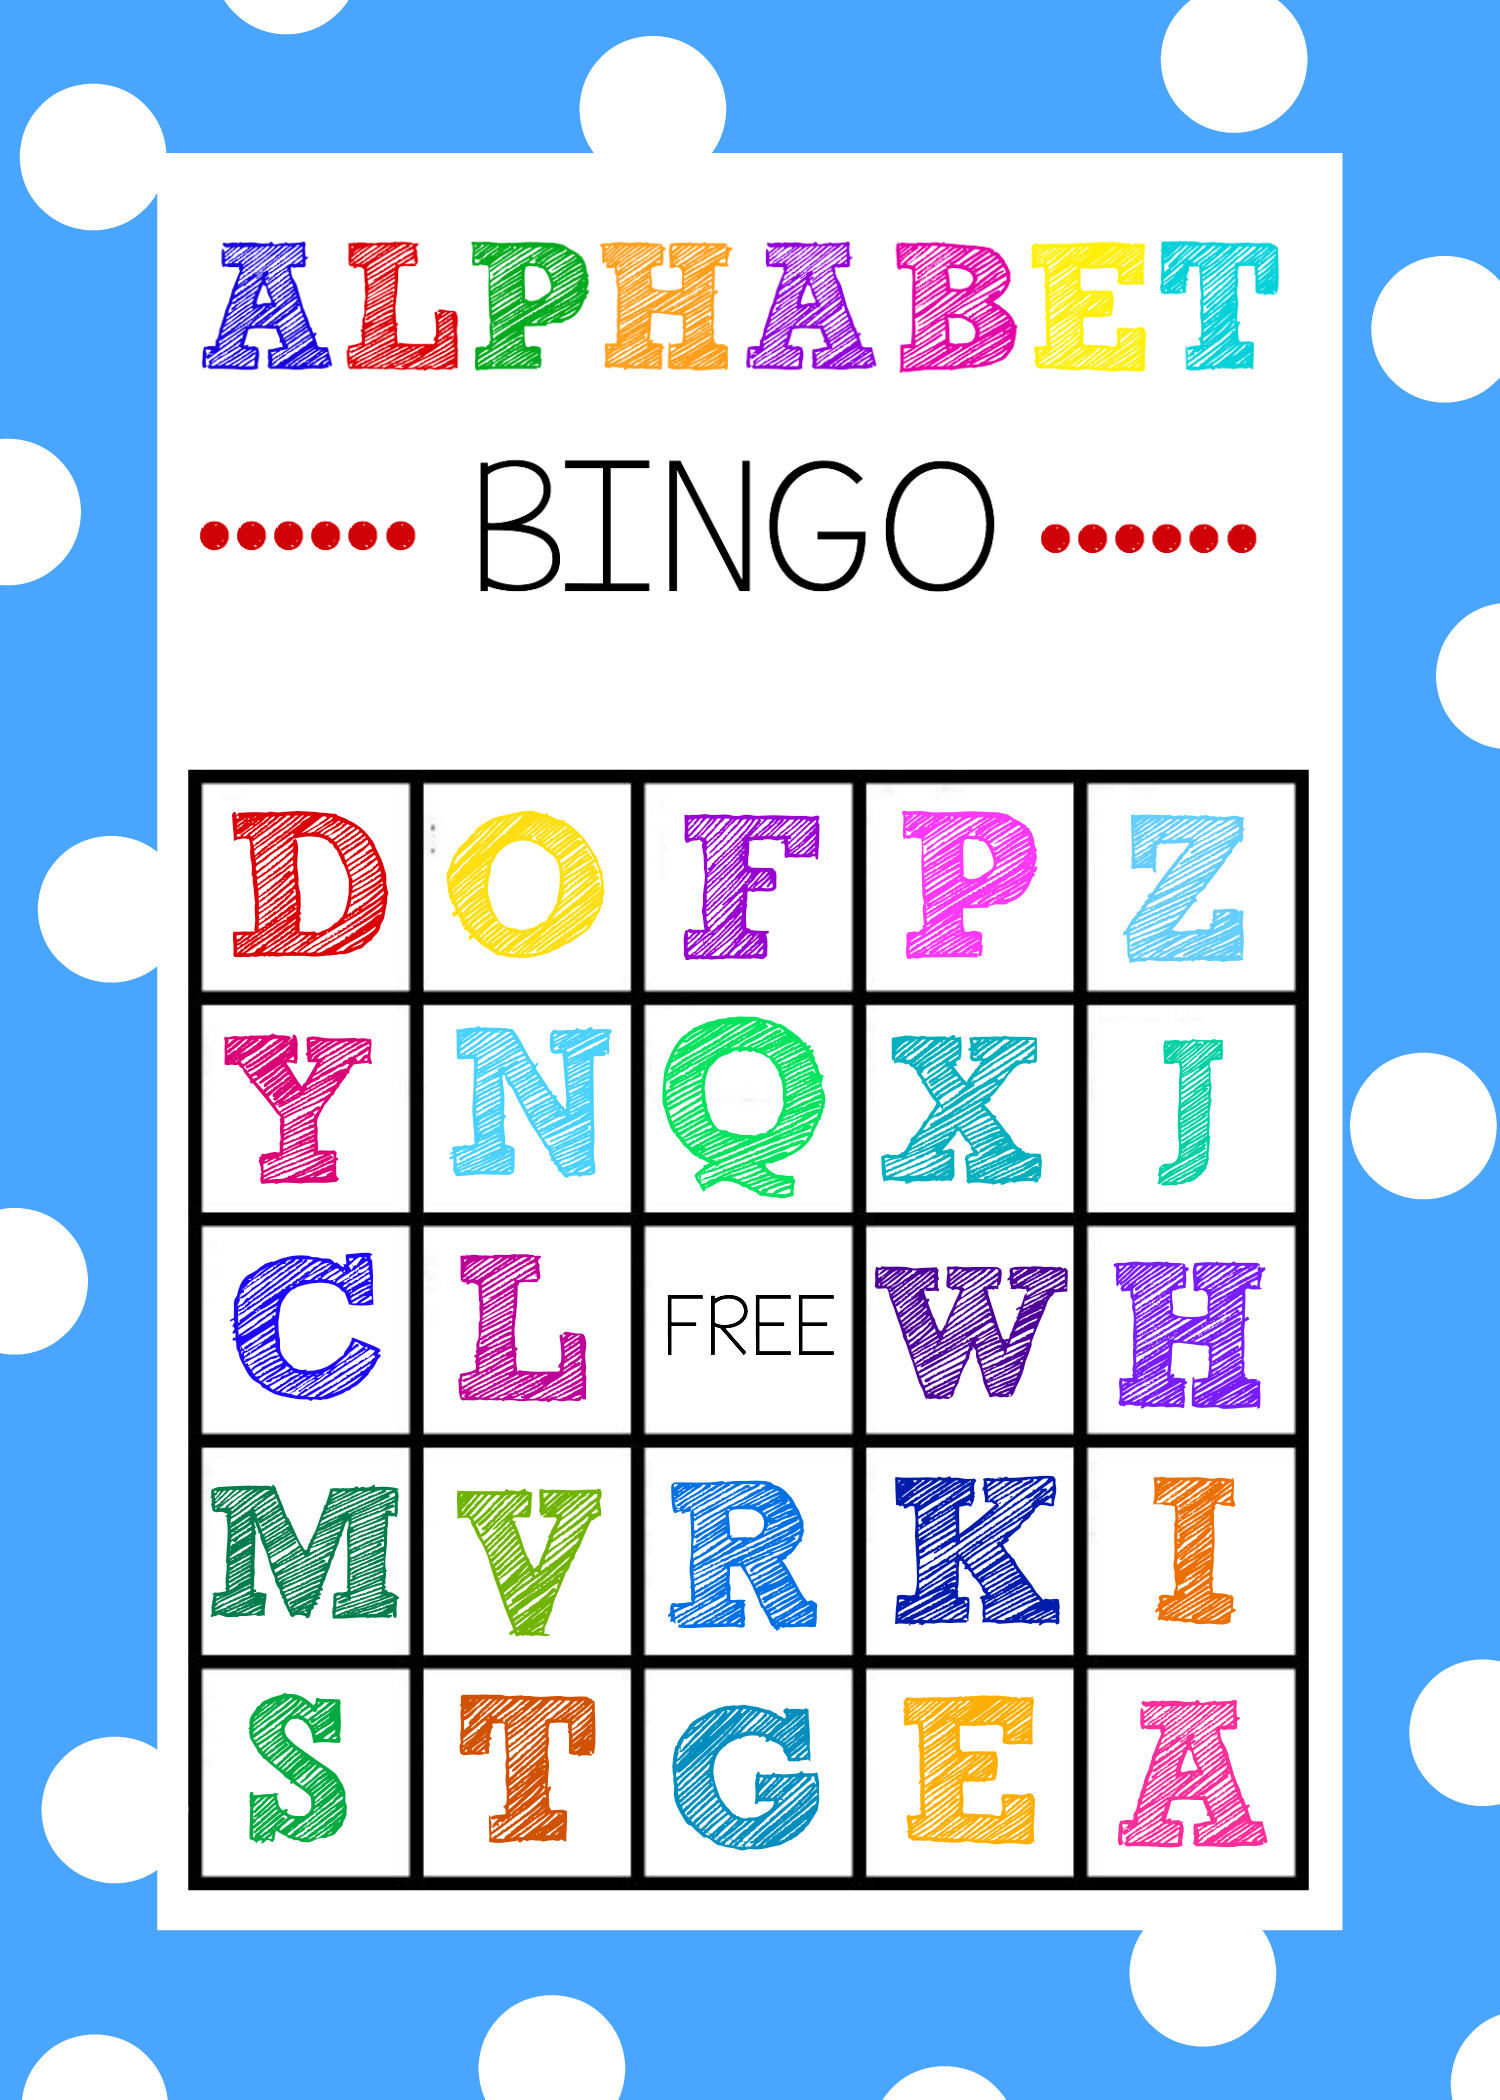 Free Printable Alphabet Bingo Game - Free Printable Bingo